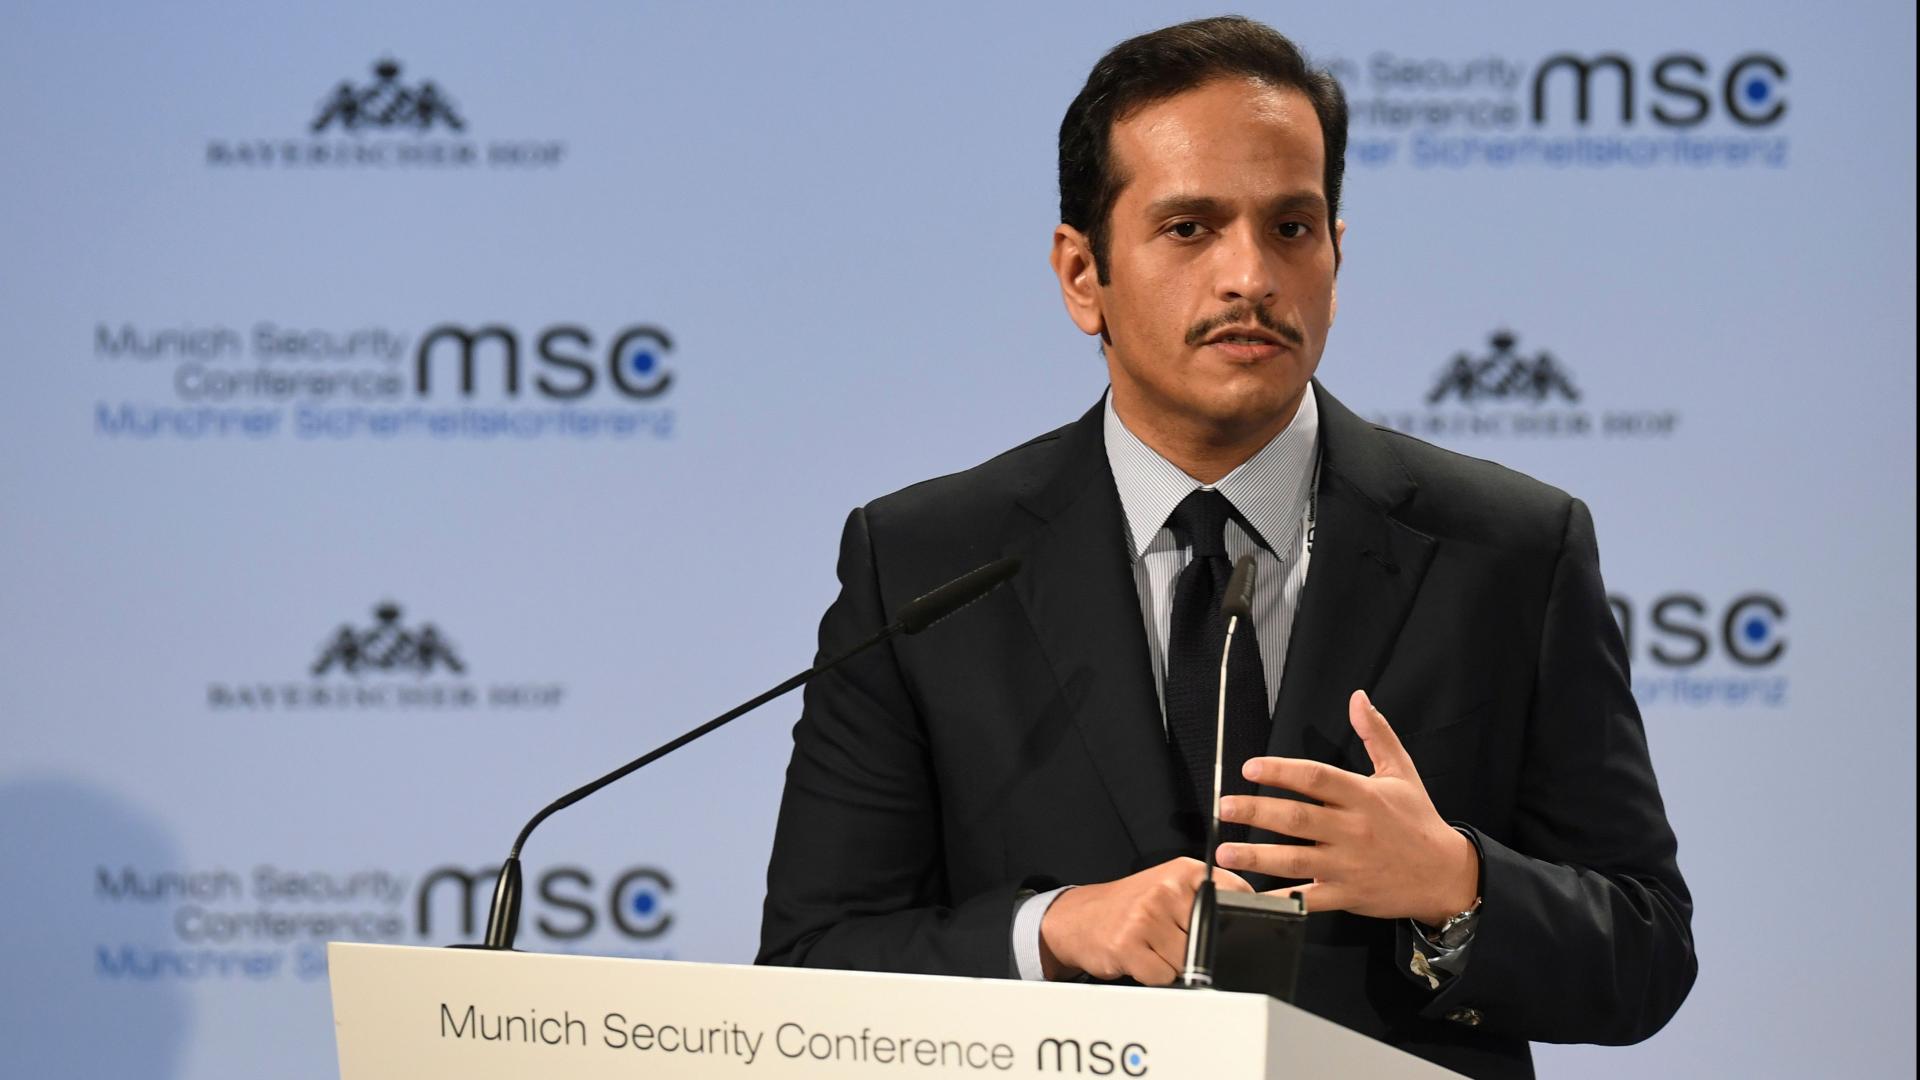 وزير خارجية قطر يوضح سياسة بلاده تجاه الأزمة الخليجية وإيران والأسد وإسرائيل